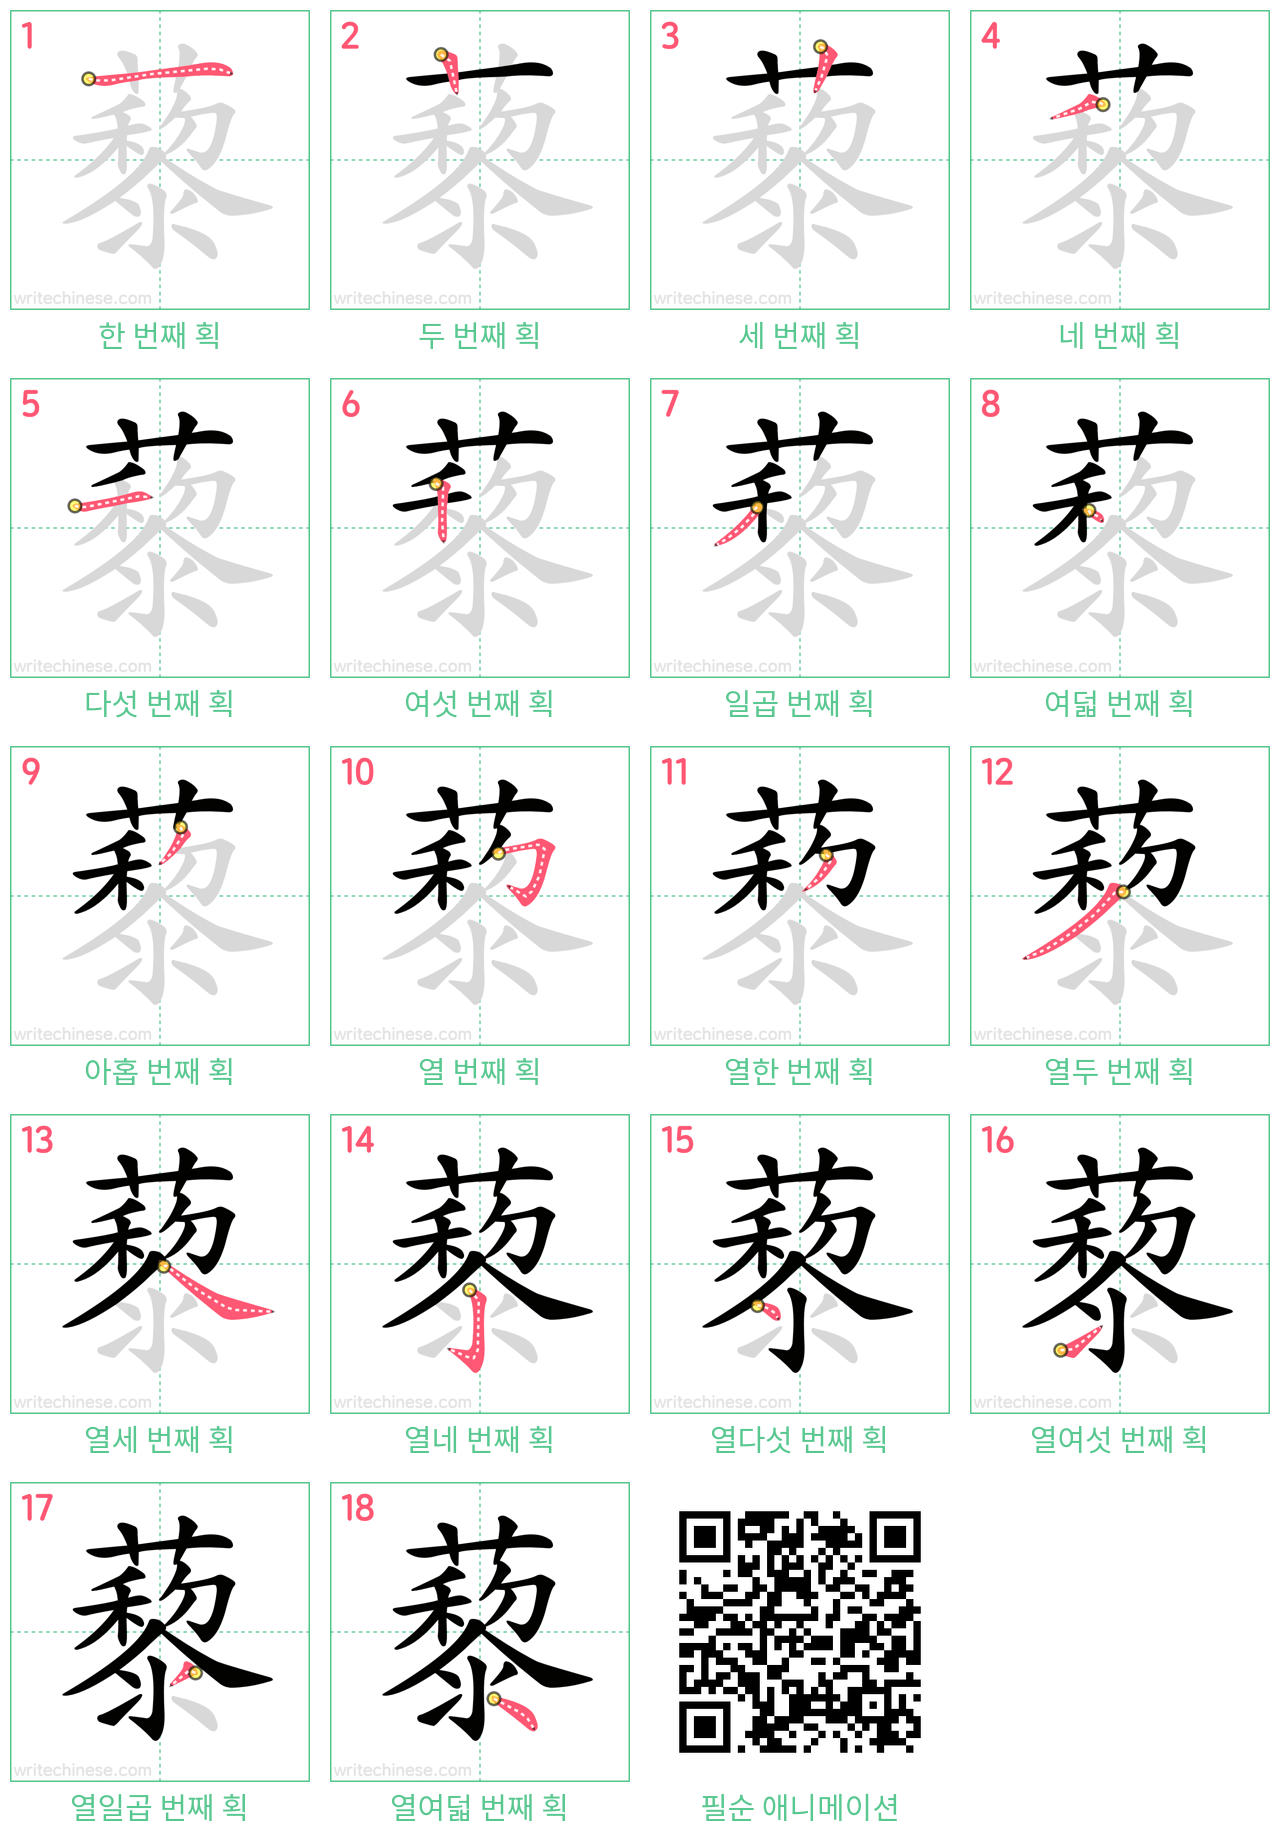 藜 step-by-step stroke order diagrams